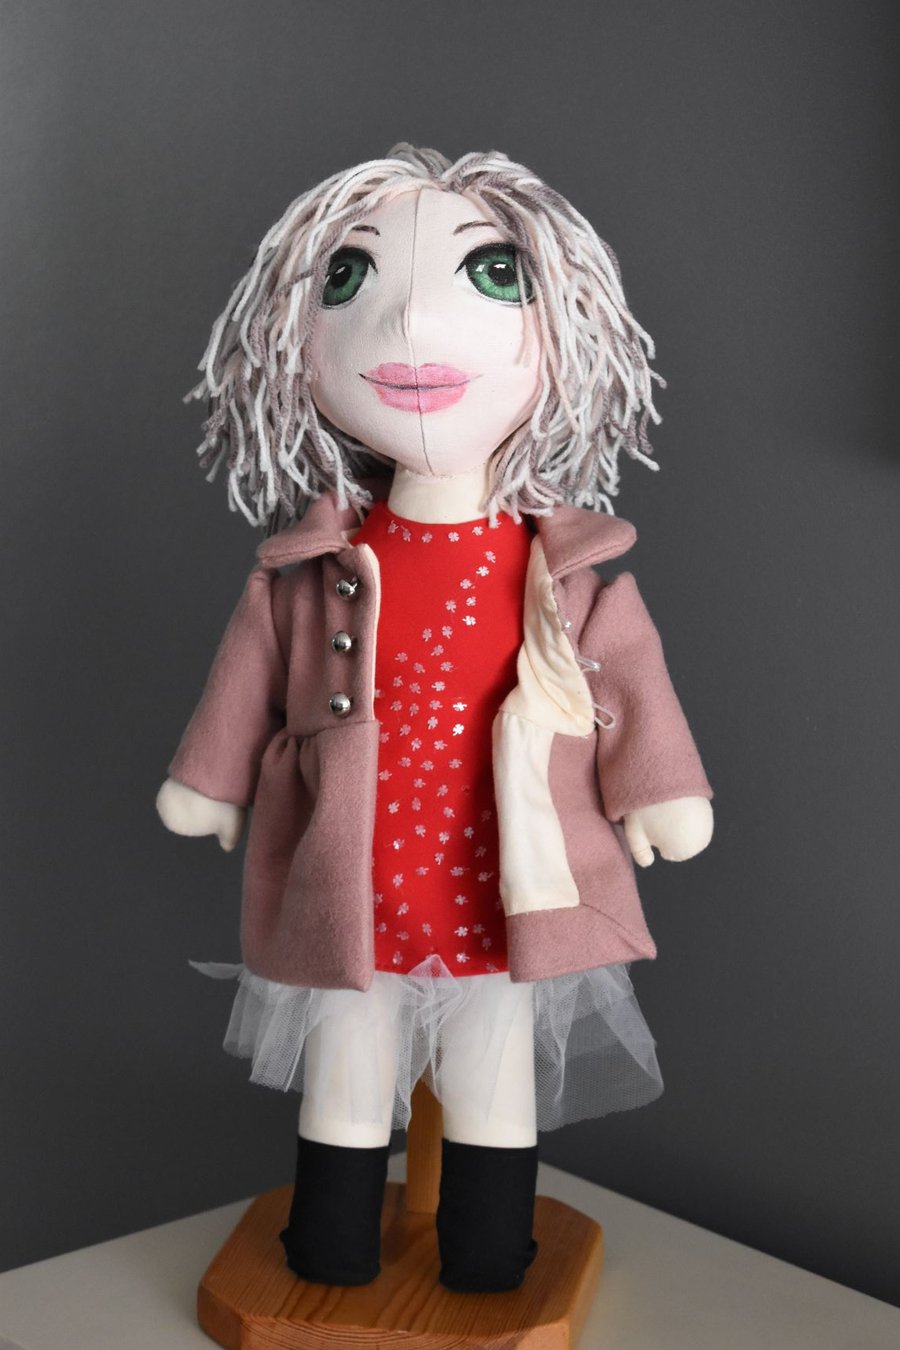 Blonde hair handmade doll gift